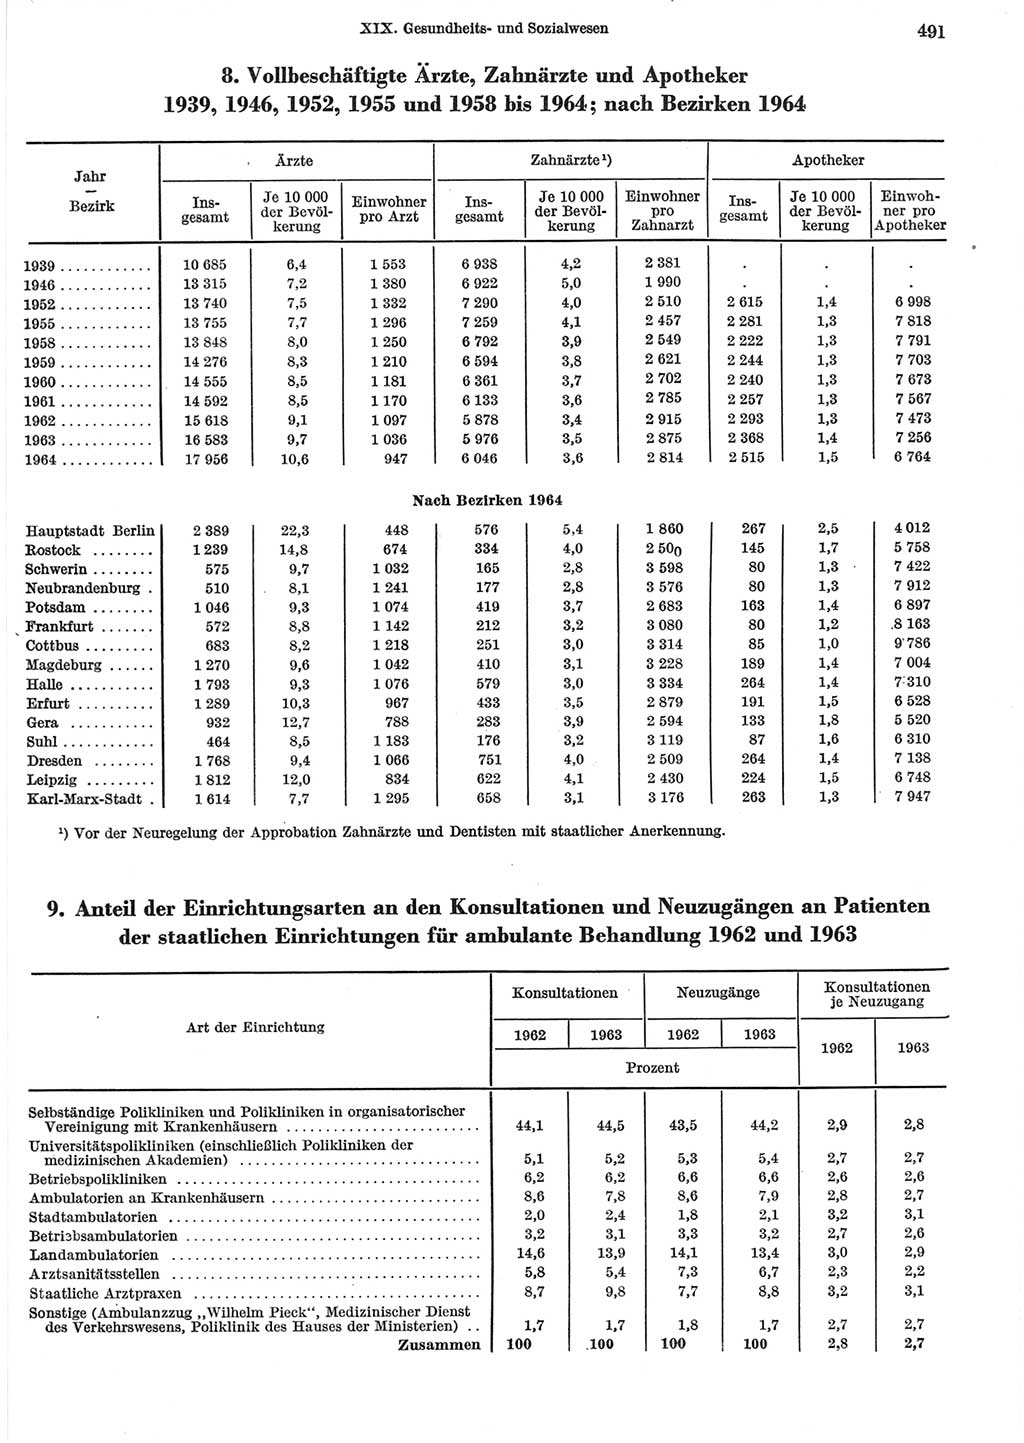 Statistisches Jahrbuch der Deutschen Demokratischen Republik (DDR) 1965, Seite 491 (Stat. Jb. DDR 1965, S. 491)